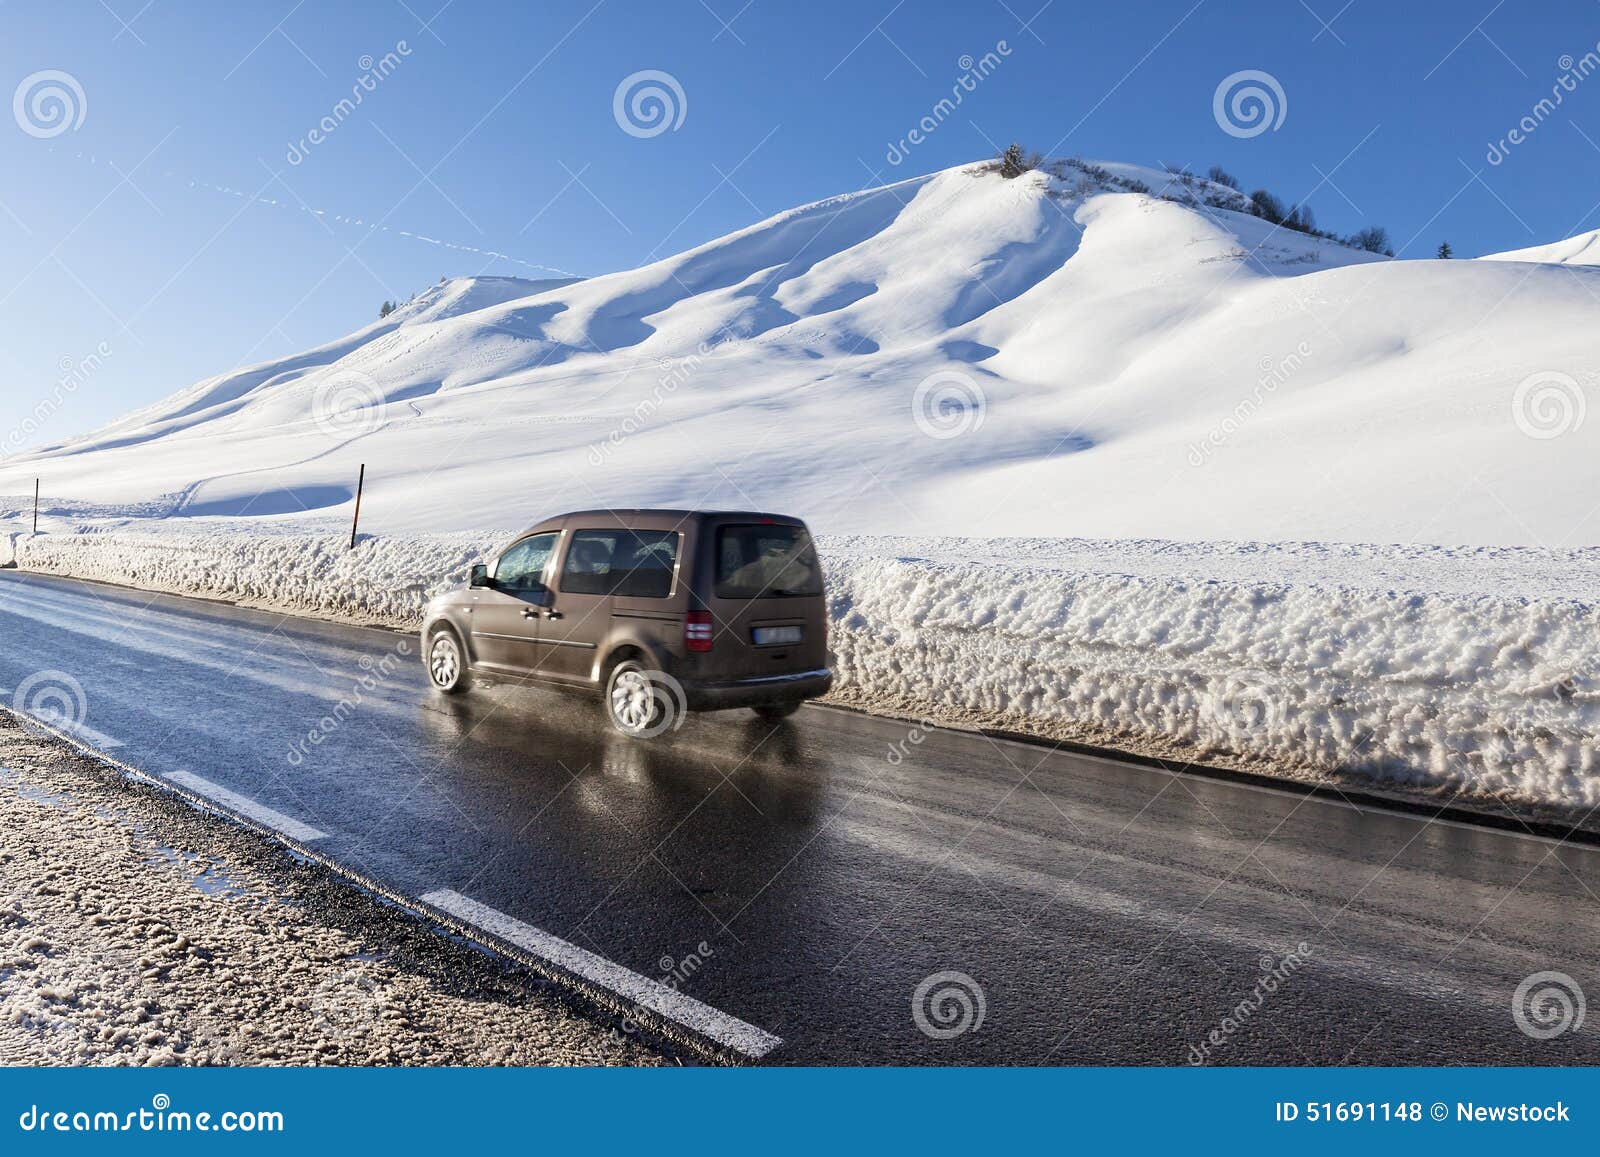 winter moutain scenery, alpine road in austrian, car speeding